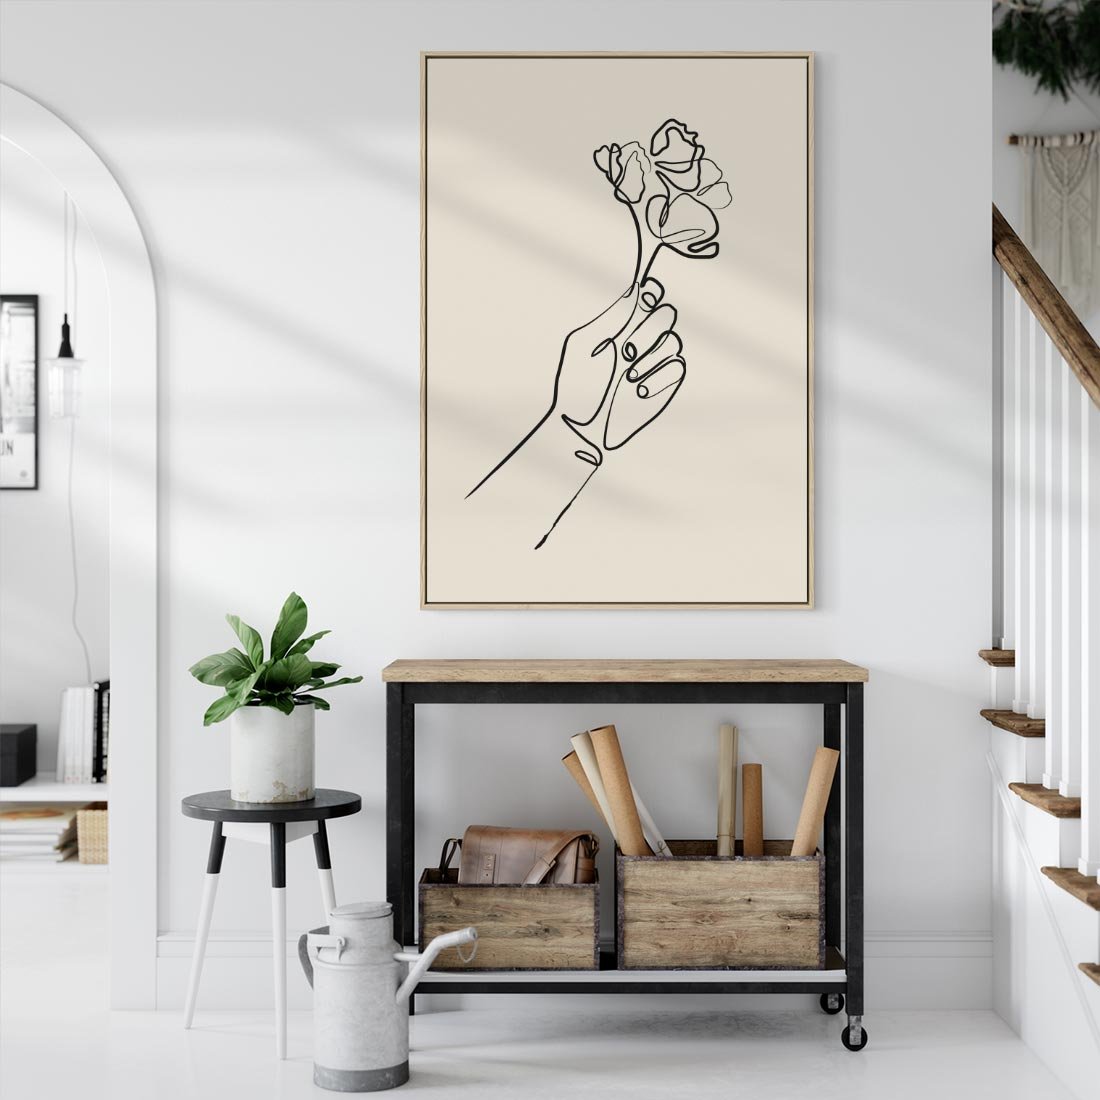 Obraz w ramie 50x70 - Szkic Kwiatu - kwiat w dłoni, szkic - rama drewno